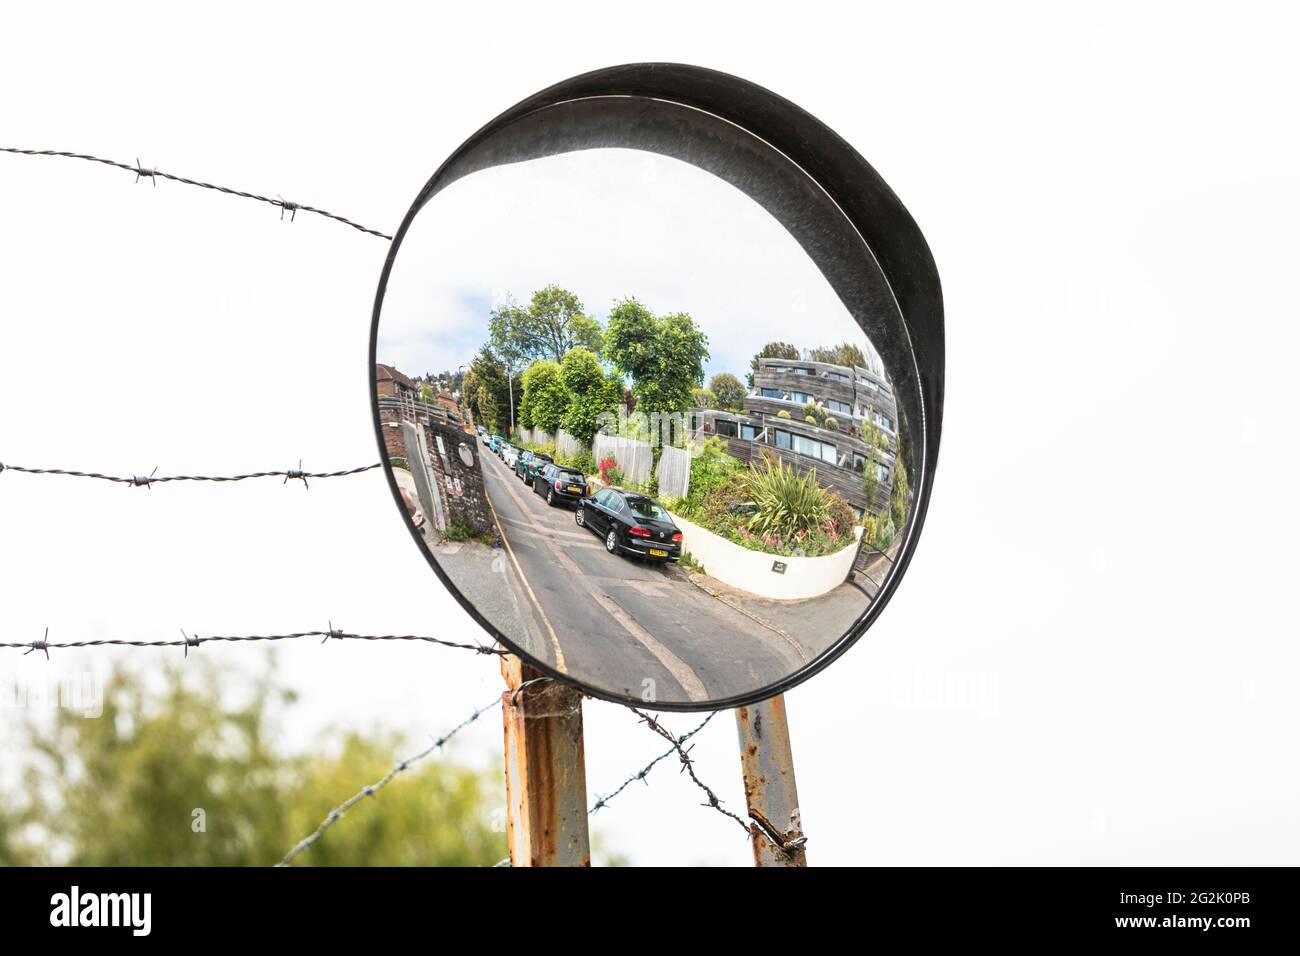 Un espejo de visión de tráfico en postes metálicos con protección de alambre de púas. Foto de stock